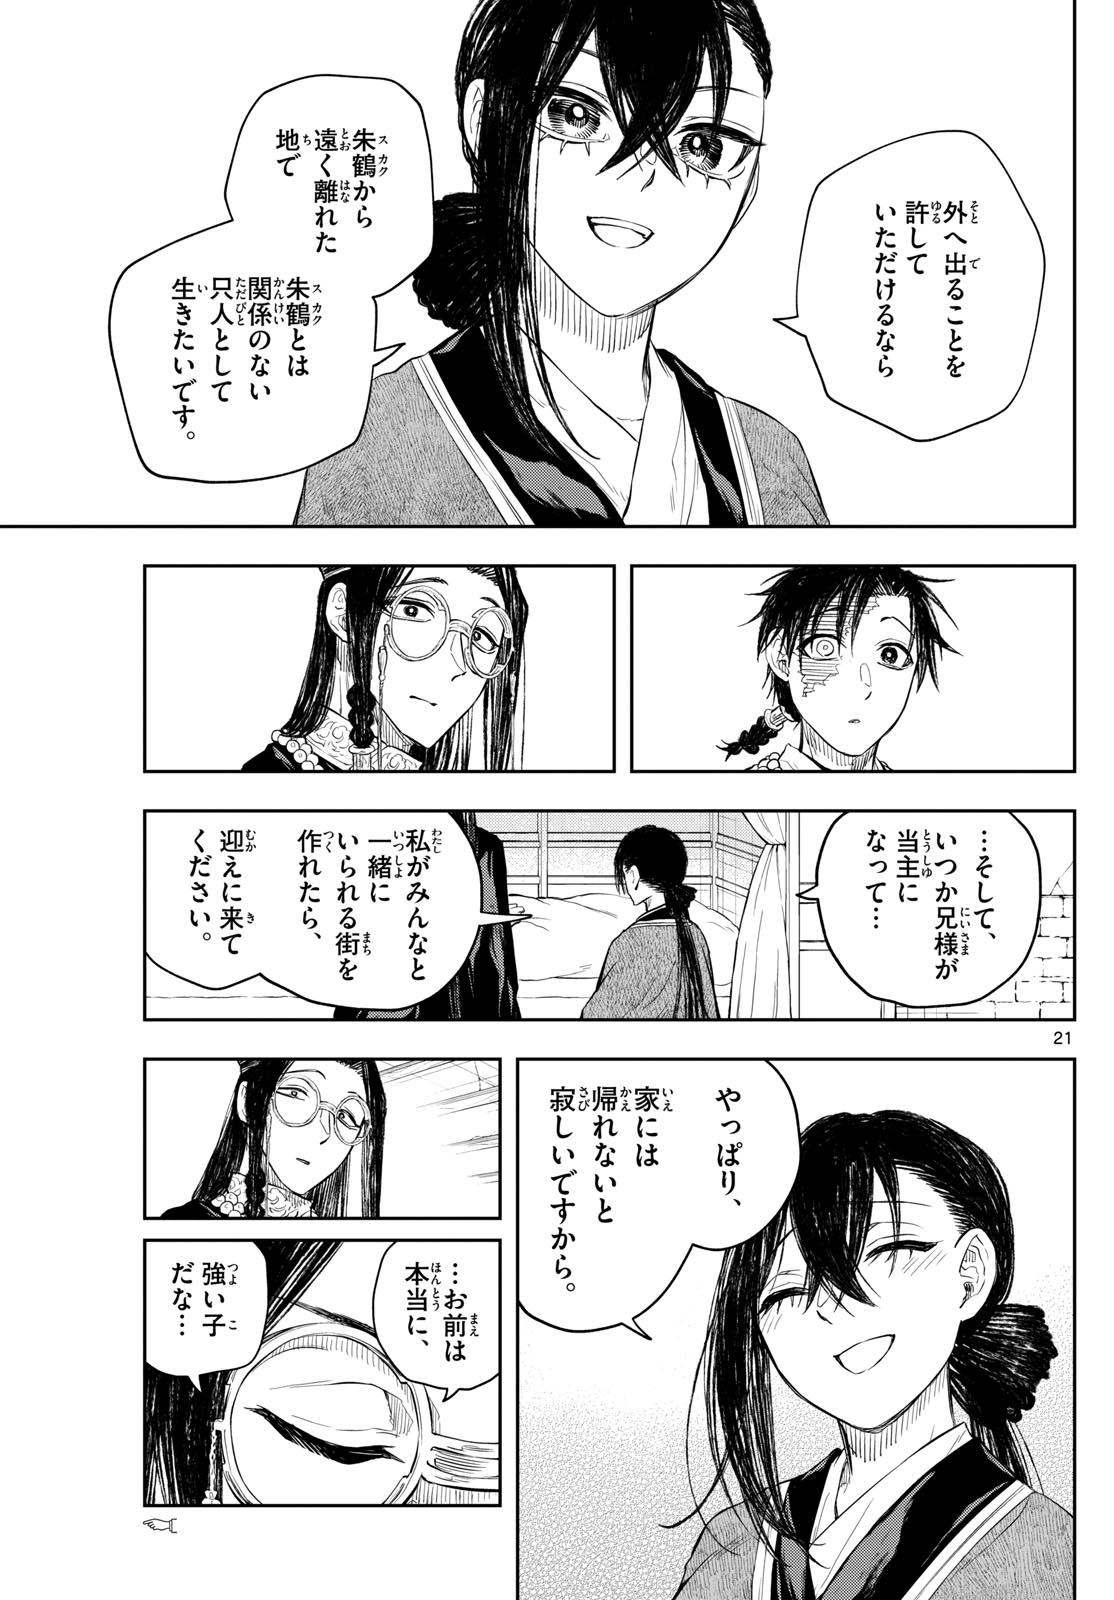 Akatsuki Jihen - Chapter 46 - Page 21